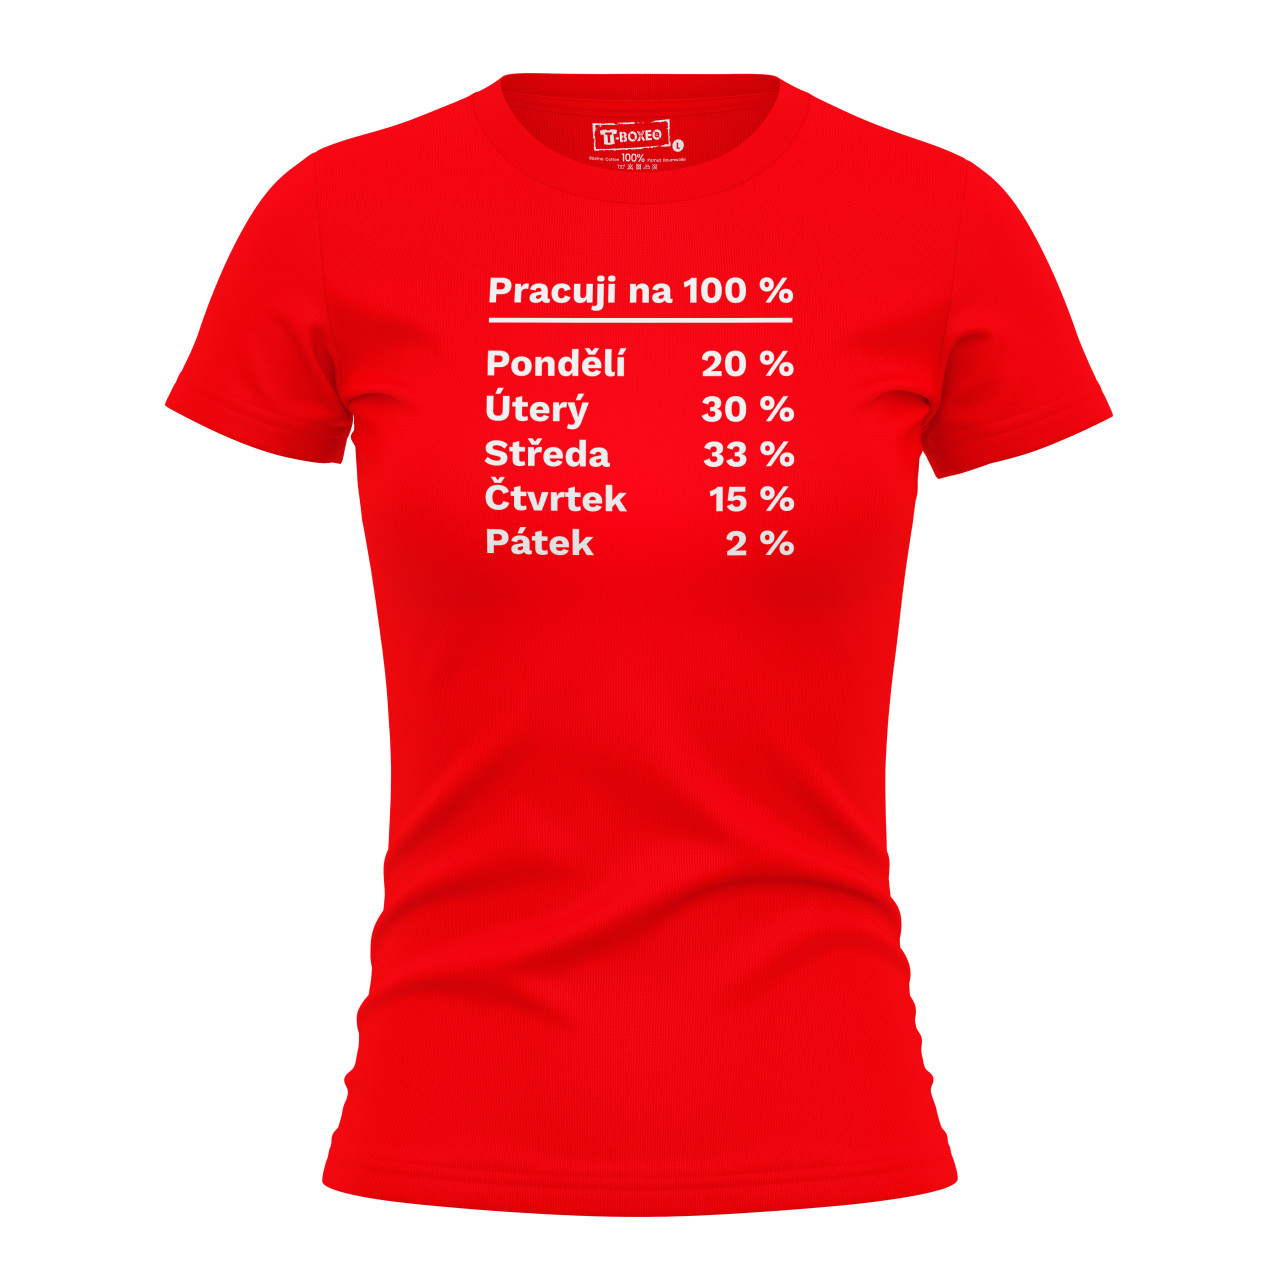 Dámské tričko s potiskem “Pracuji na 100 %”